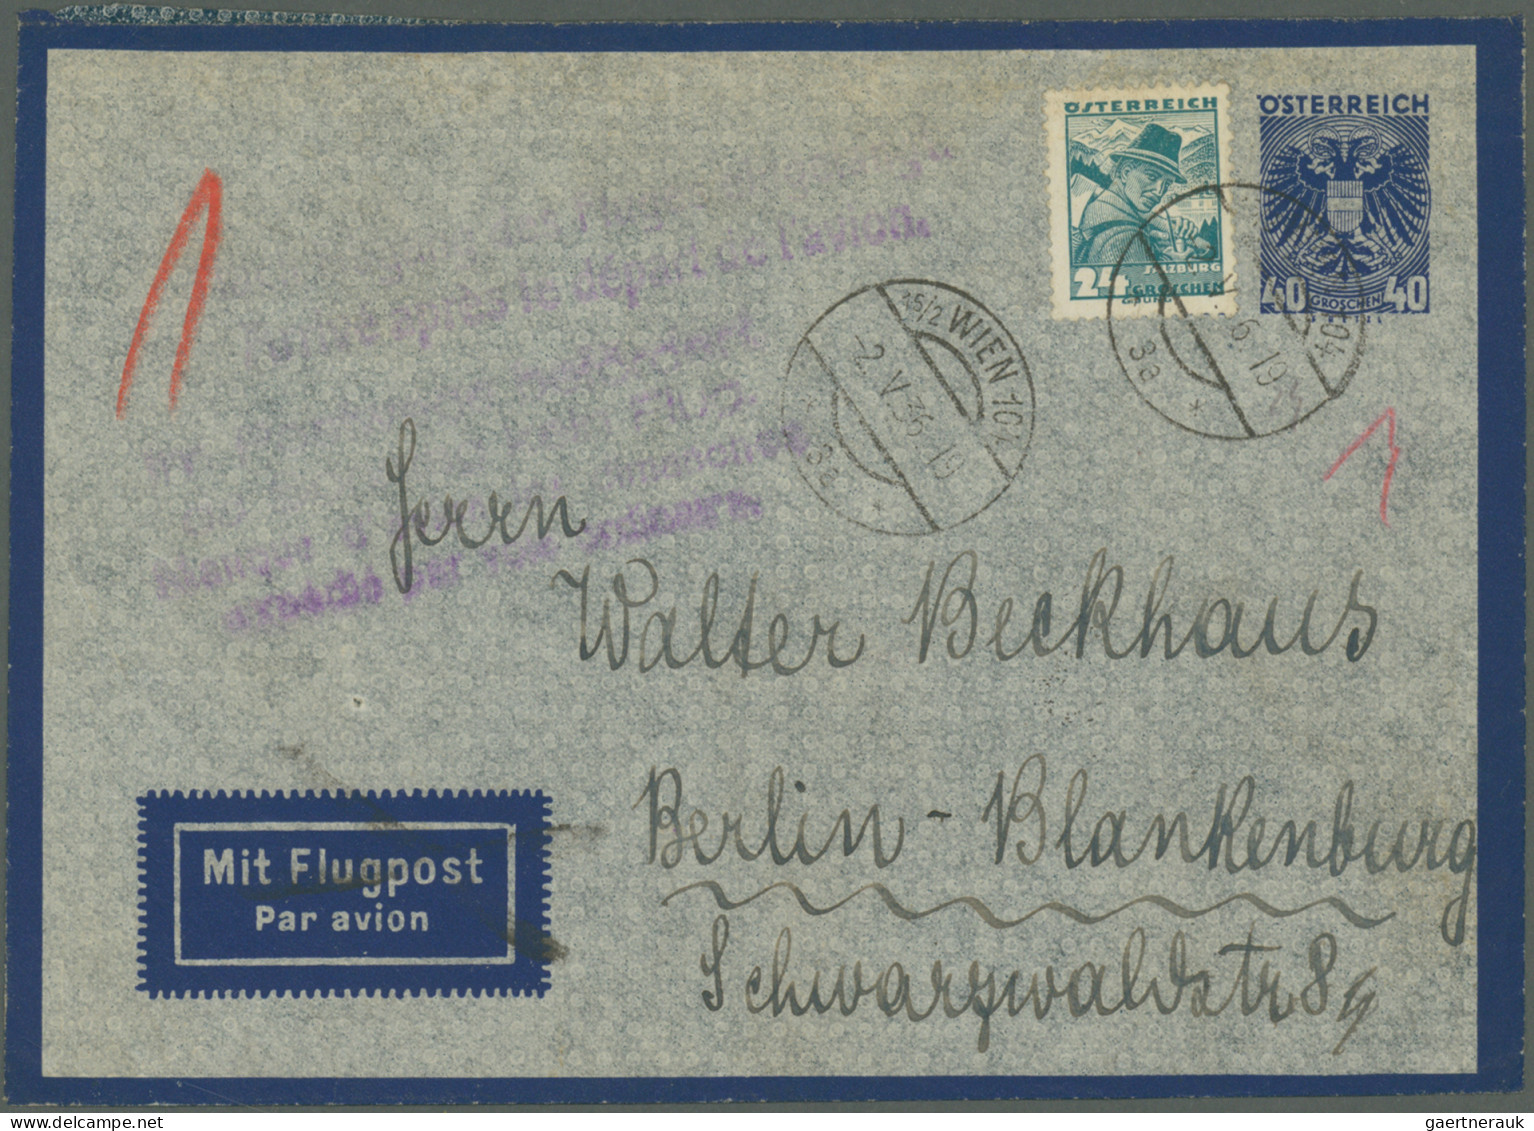 Österreich - Flugpost: 1927/1978, umfangreiche und vielseitig strukturierte Samm